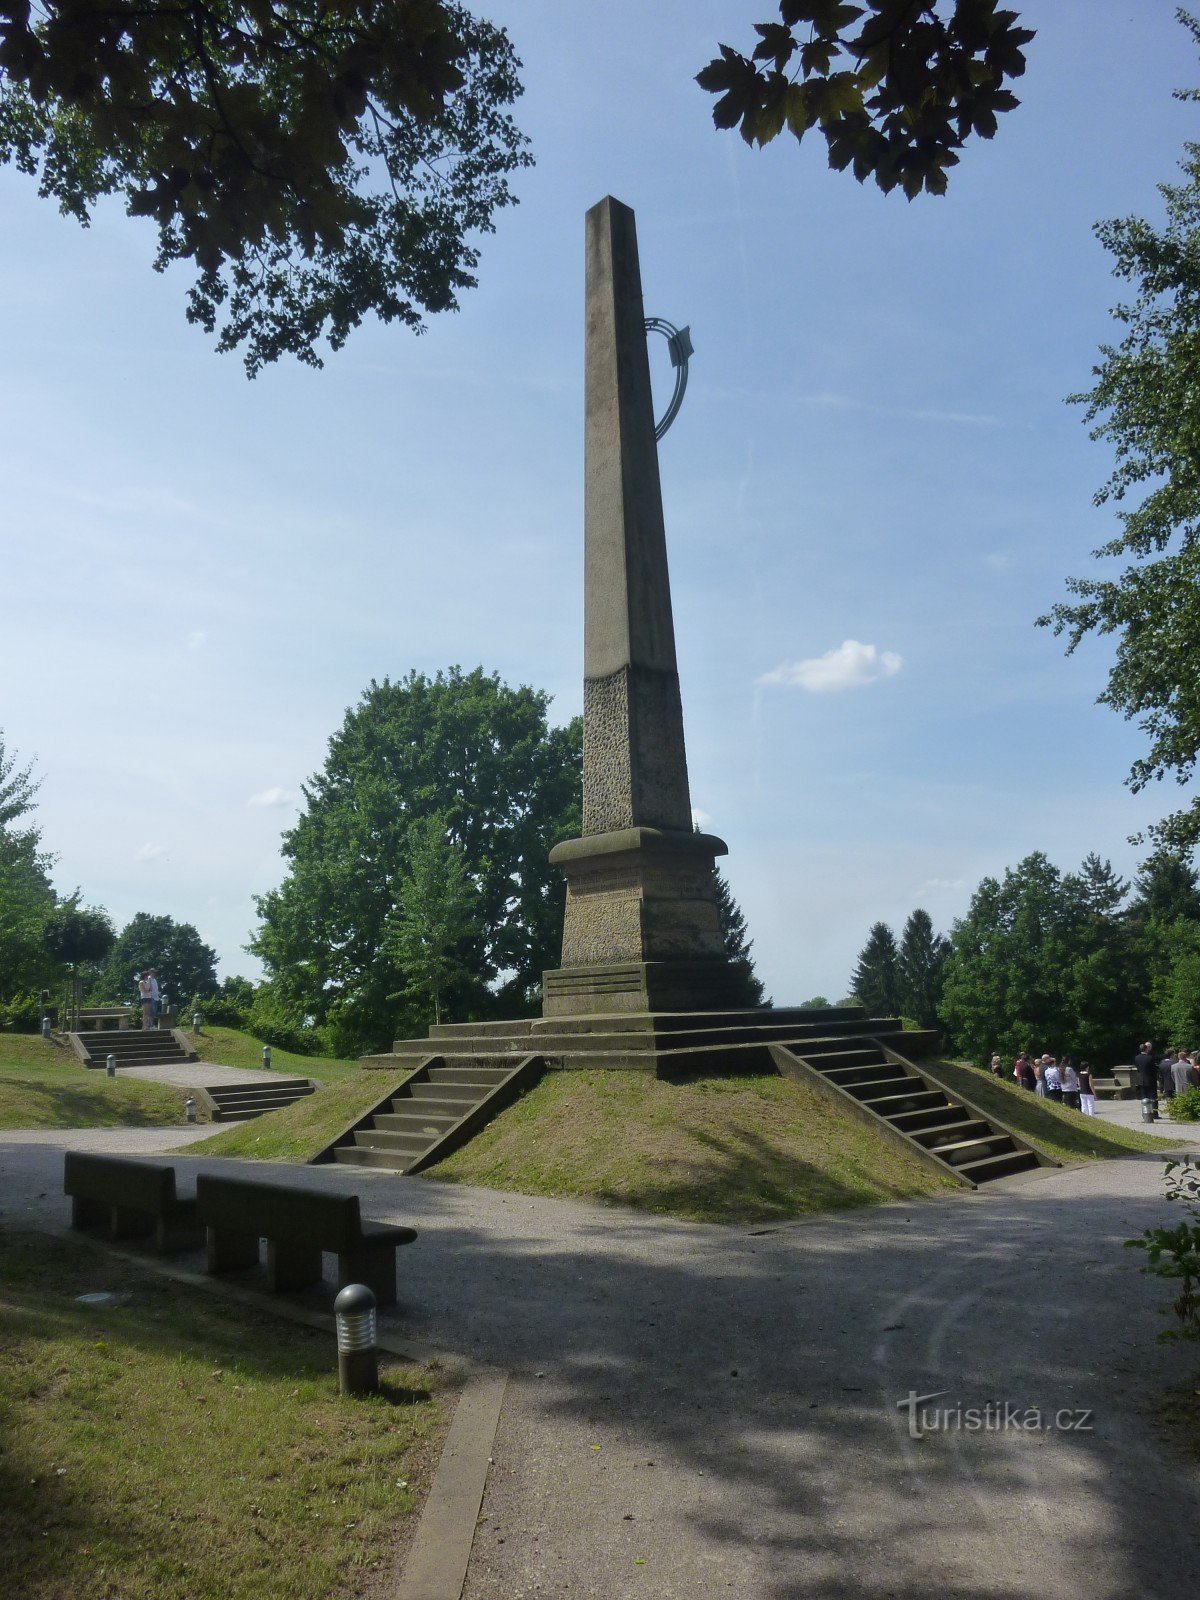 tượng đài và công viên tượng của St. Gothard